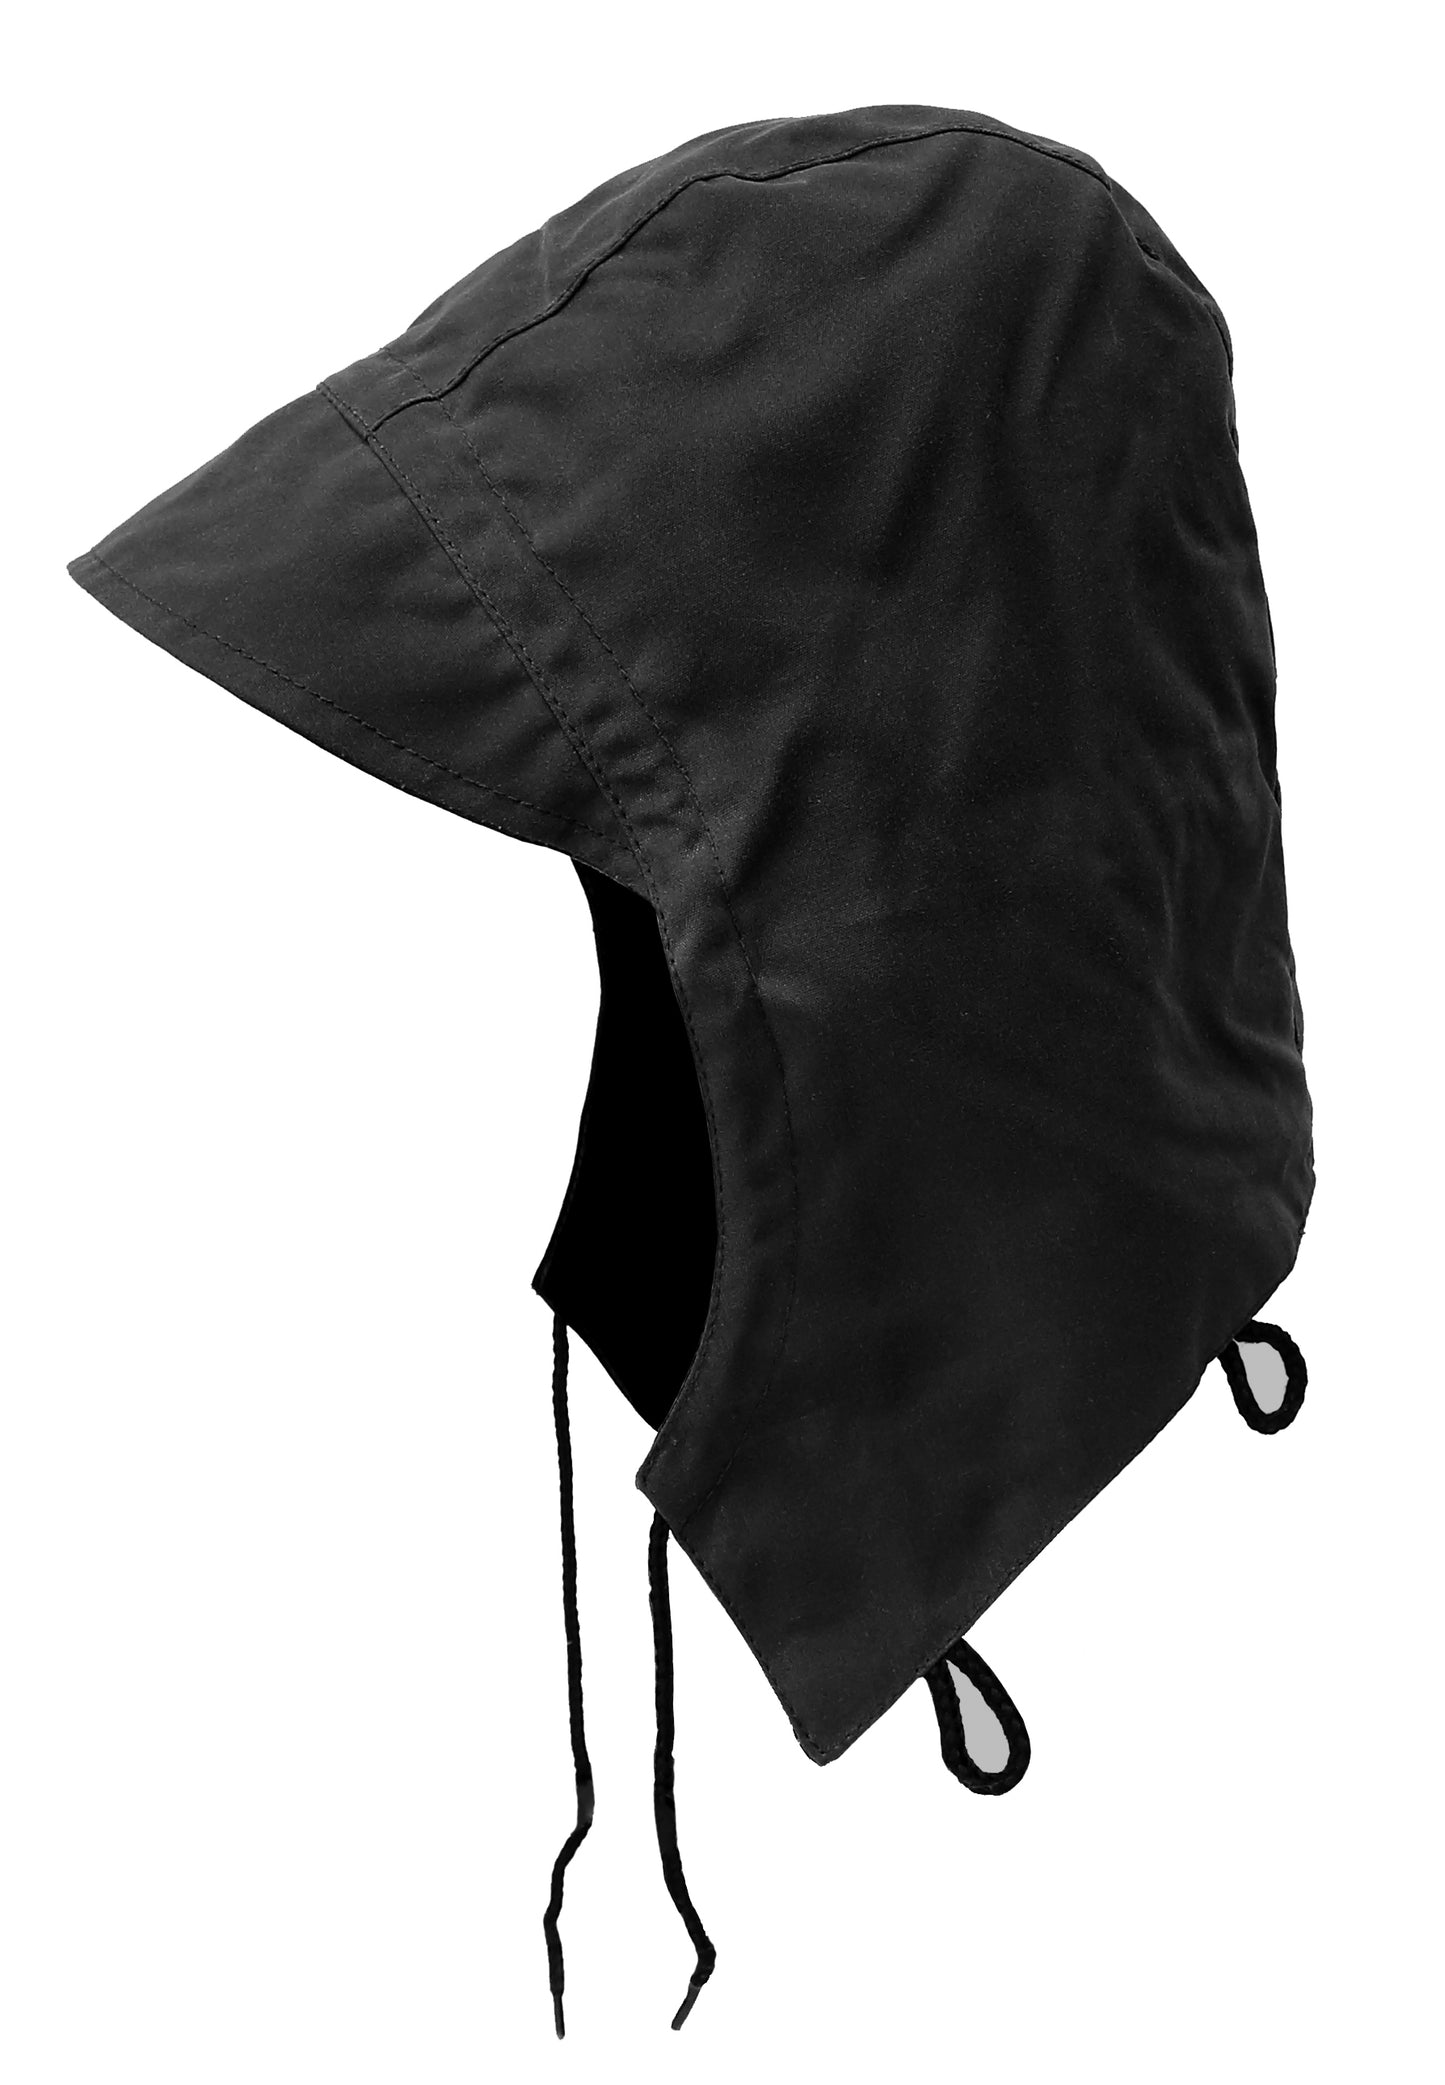 Ölzeug Kapuze passend für Jacken & Mäntel in schwarz und braun